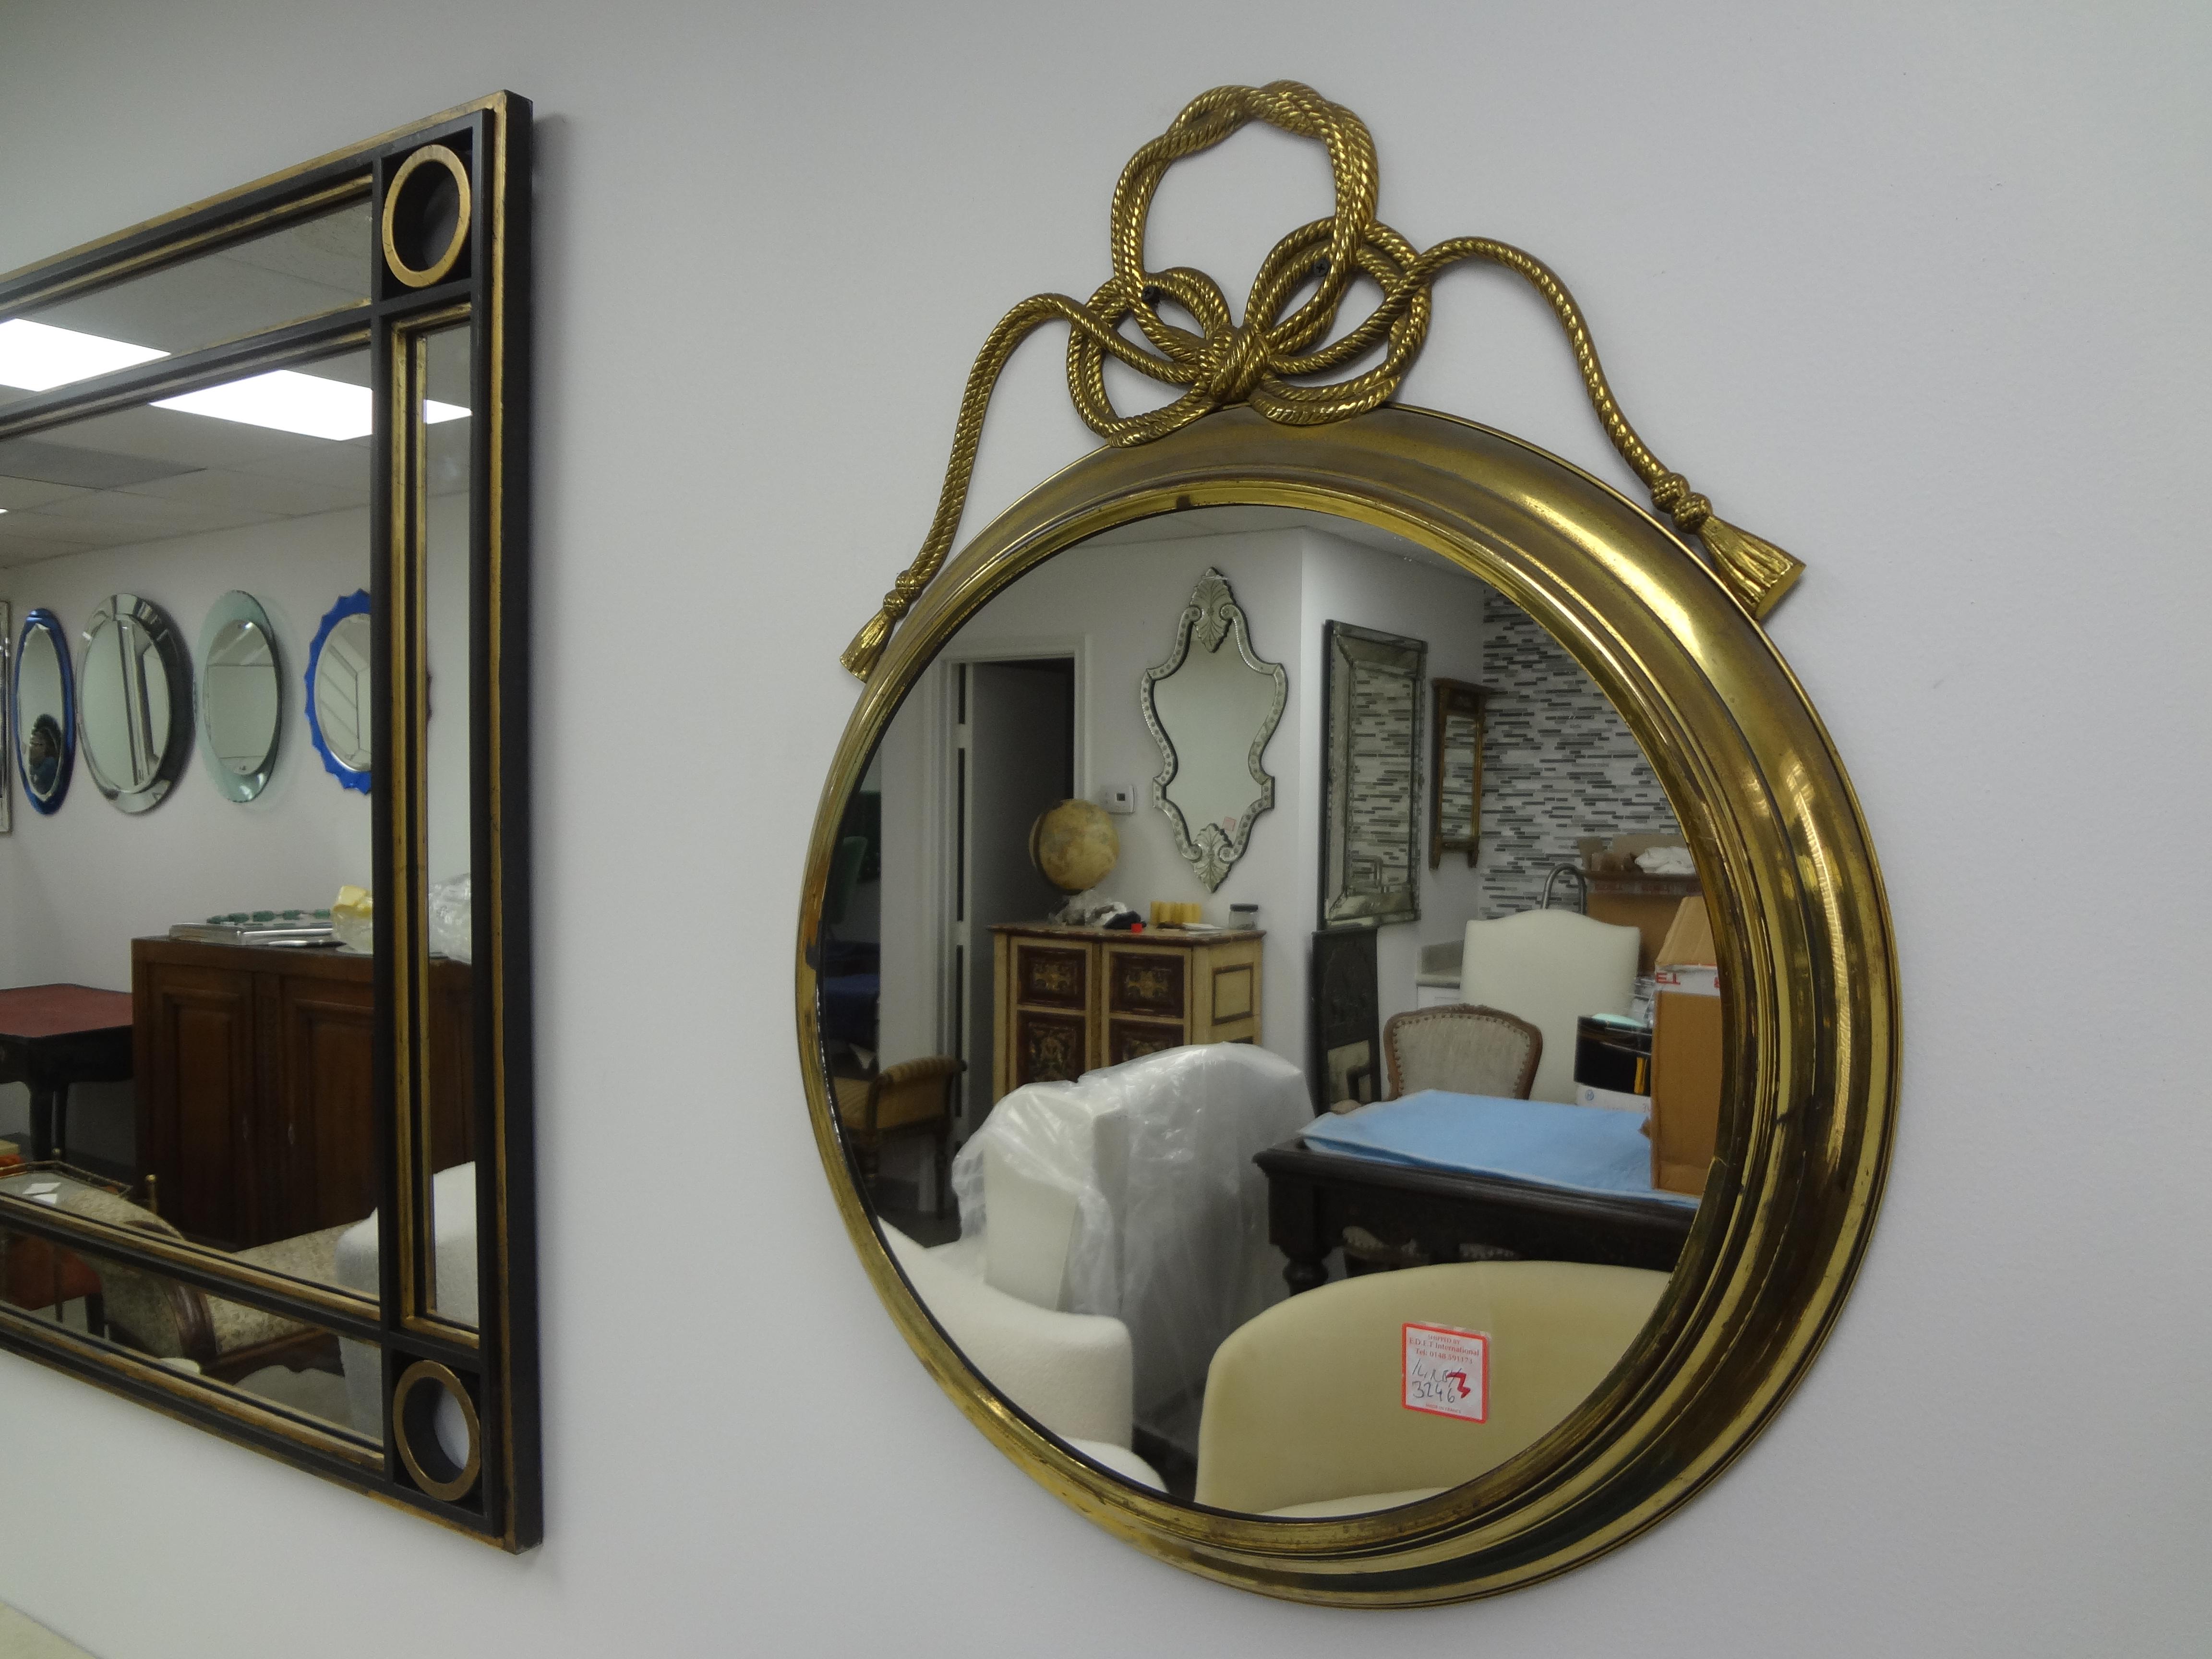 Miroir moderne italien en laiton avec arc.
Notre chic miroir italien en laiton Hollywood Regency est bien construit et orné d'un nœud bradé au sommet.
Parfait dans une salle d'eau !